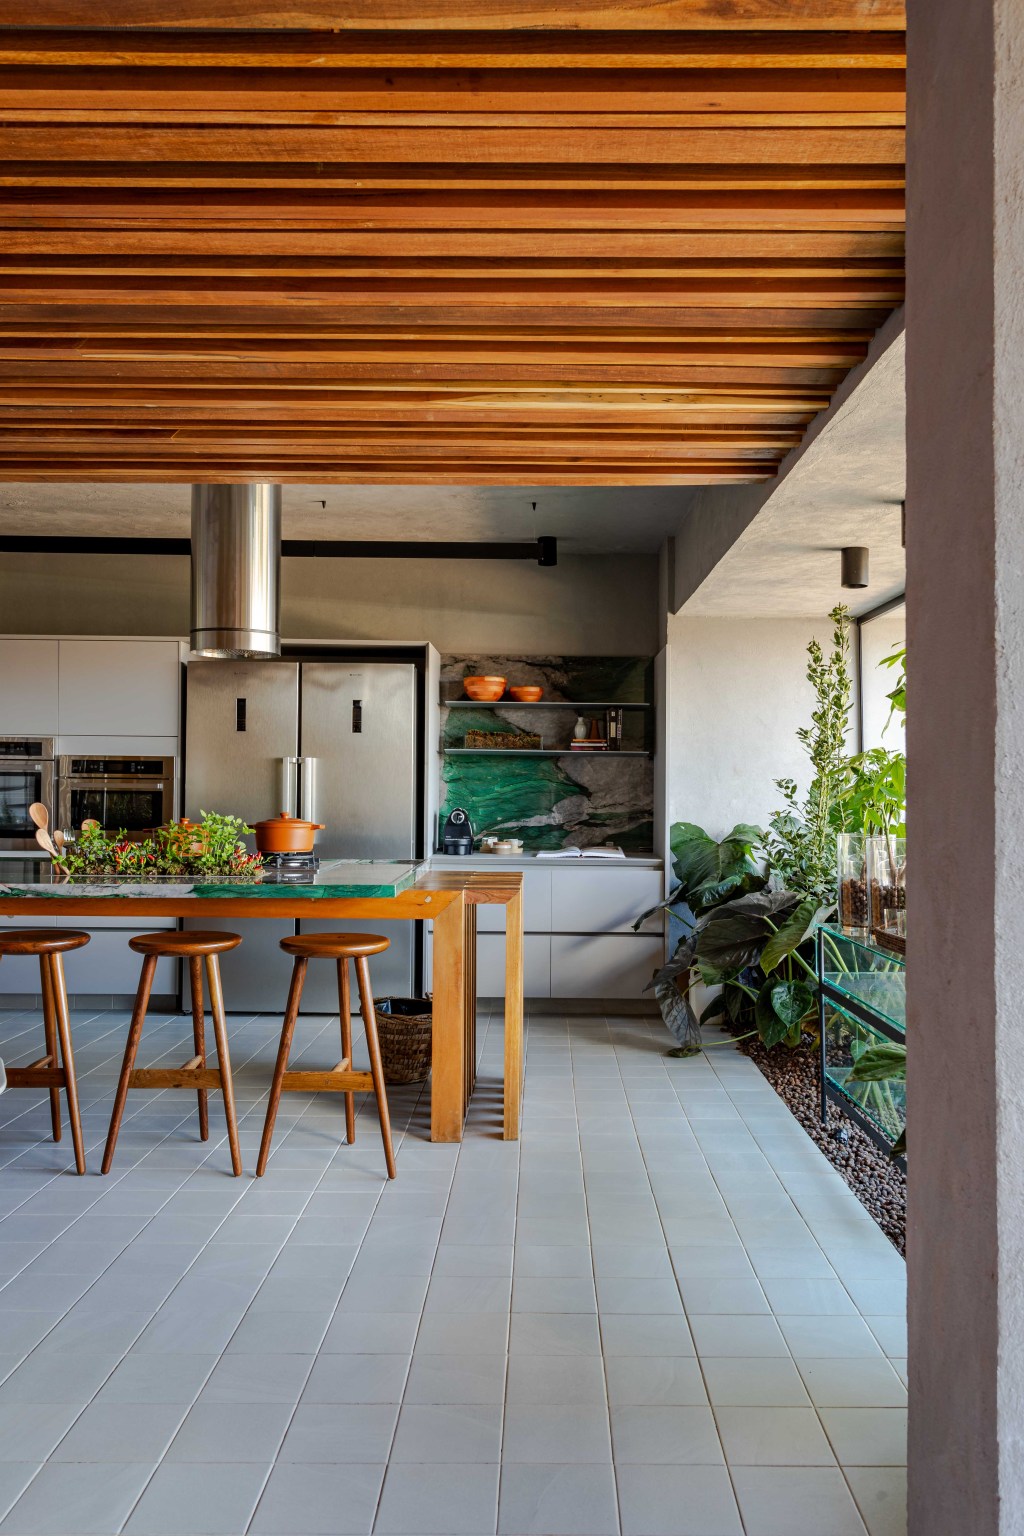 Cozinha Ágape, projeto de Tatiana Melo para a CASACOR Bahia 2023. Na foto, cozinha com ilha, jardim e teto de madeira.